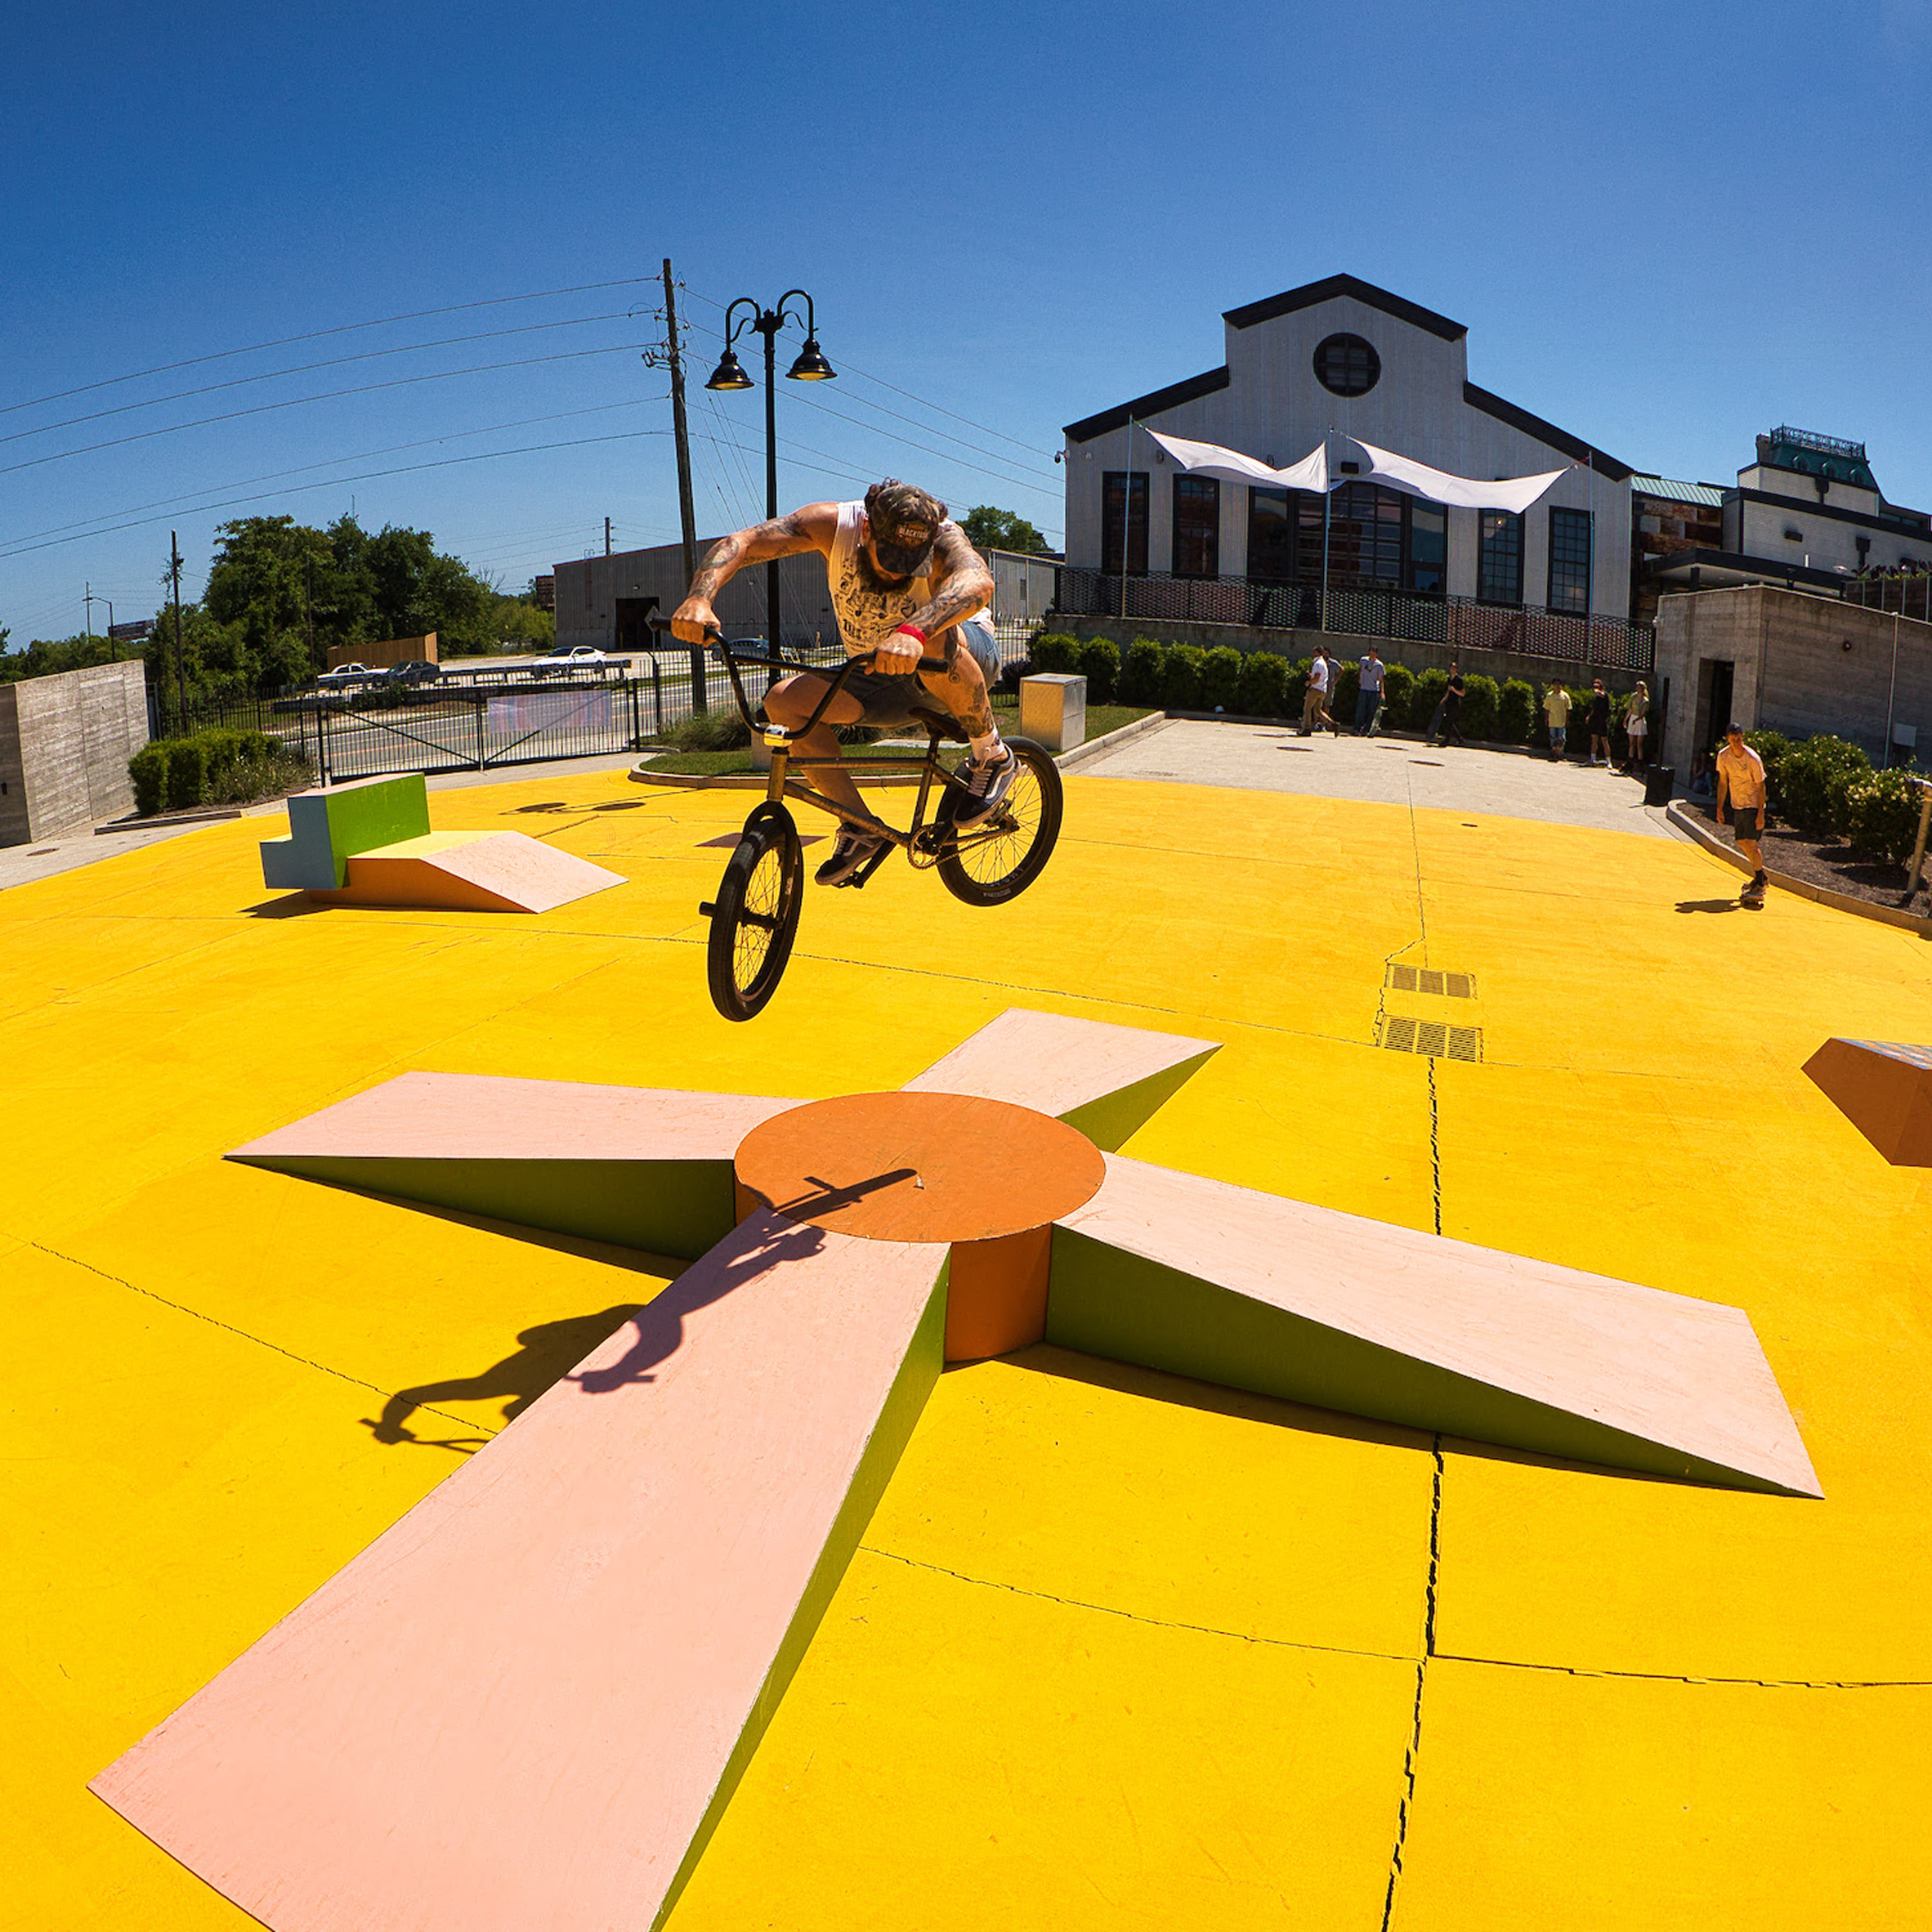 Tony Hawk - The Skatepark Project